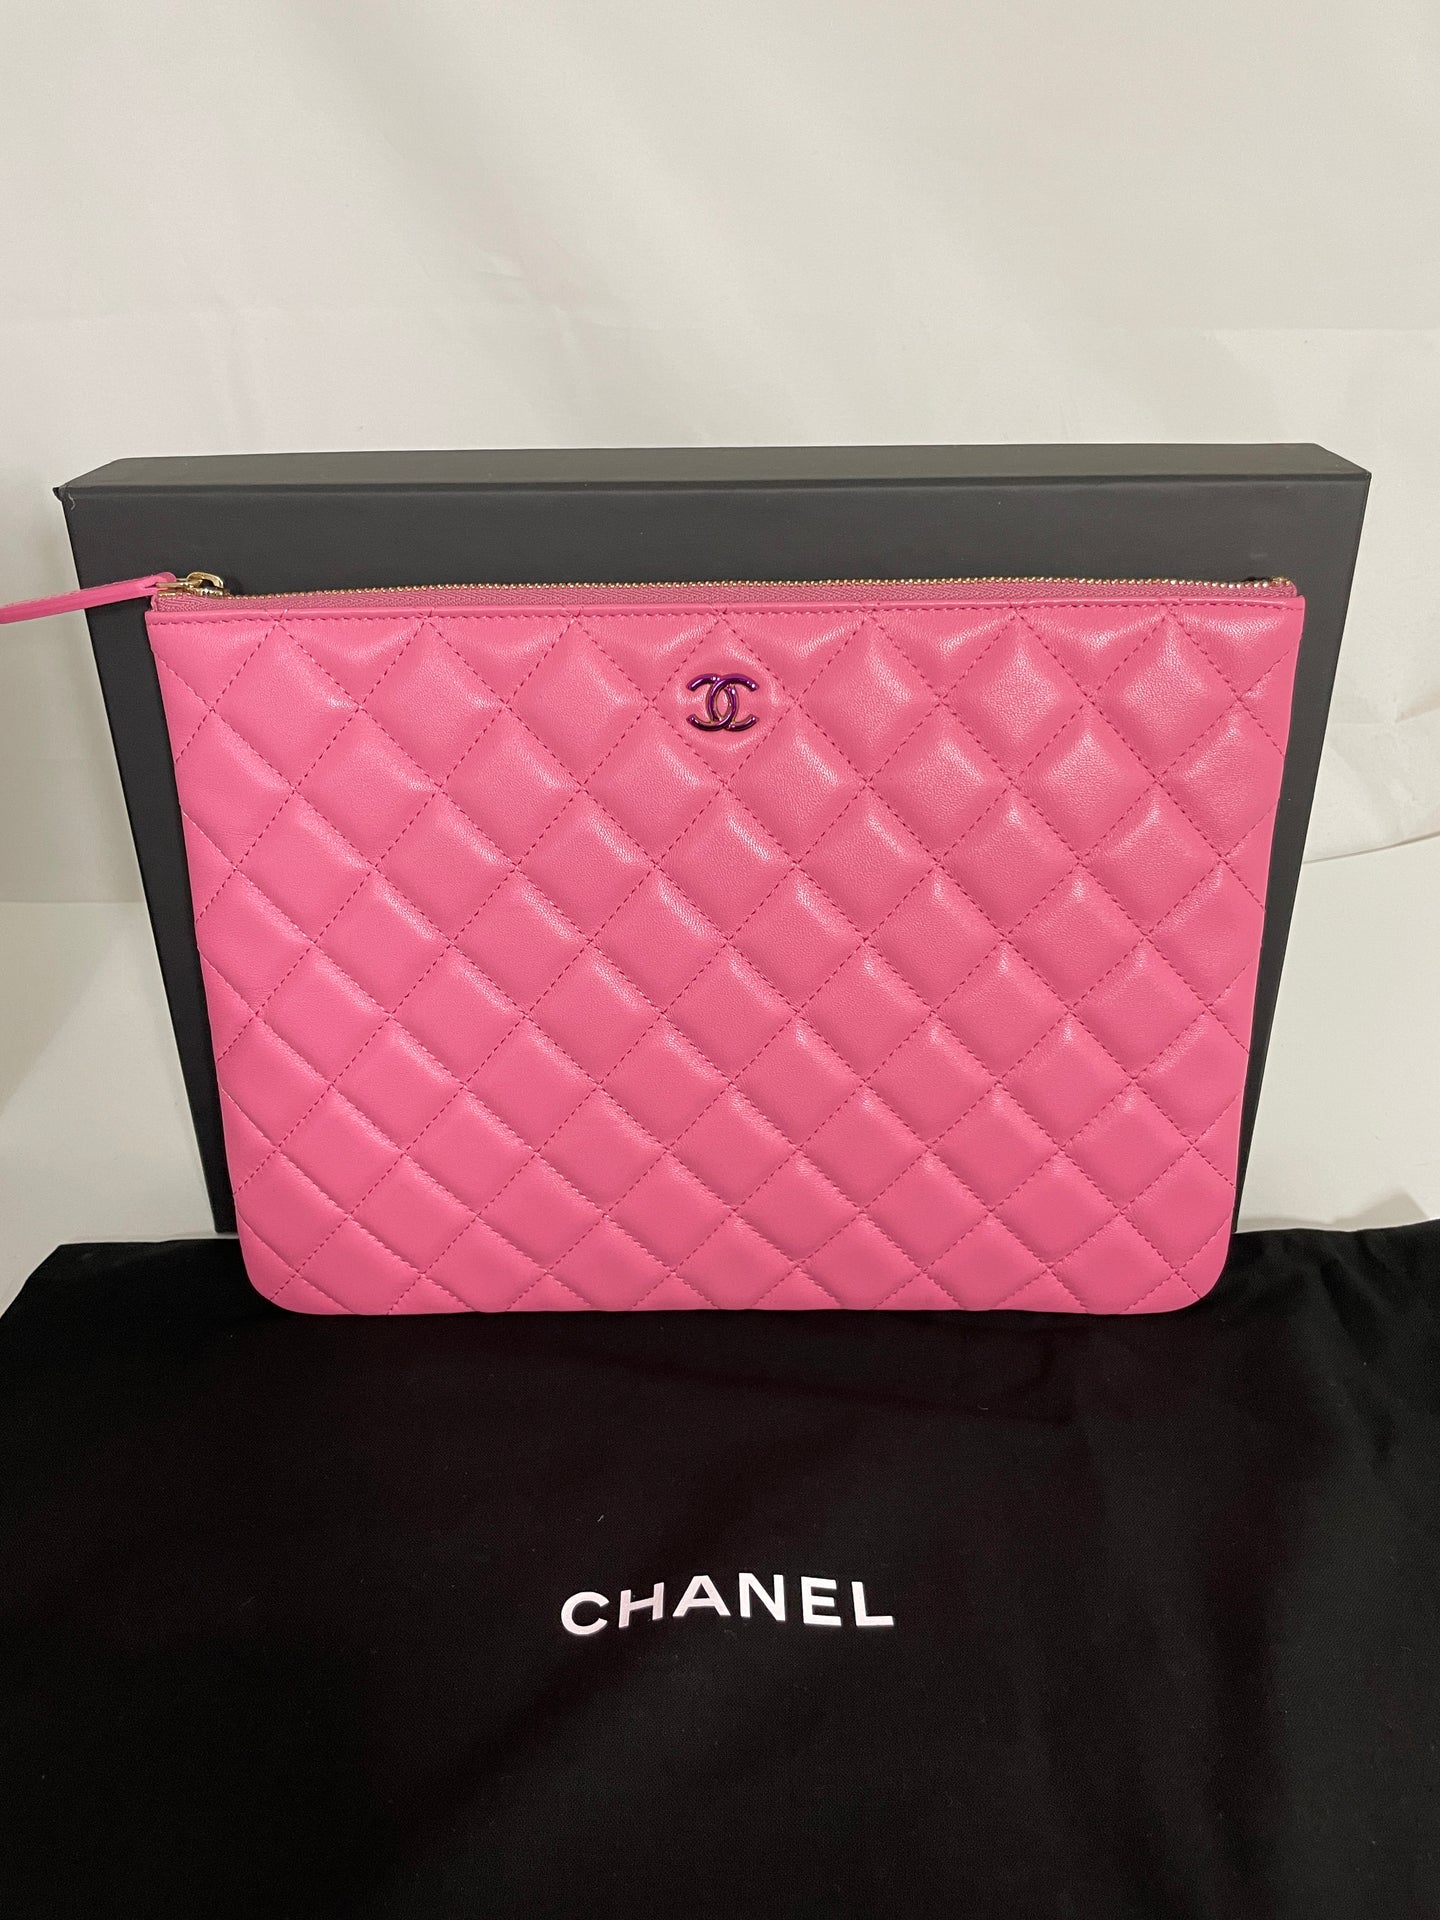 Chanel Bubblegum Pink Medium Ocase Clutch